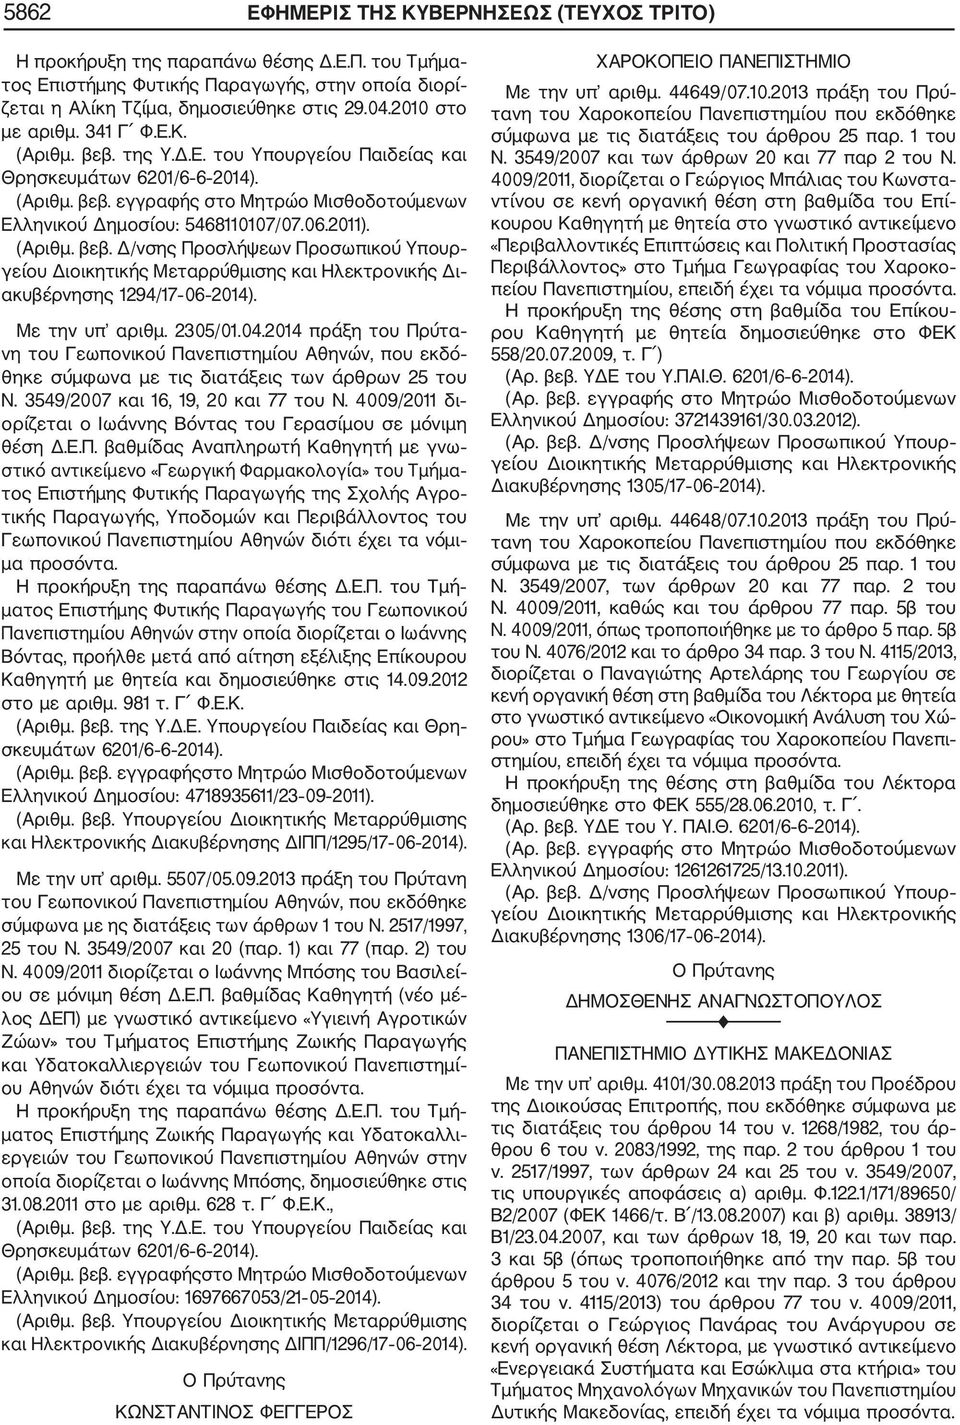 2014 πράξη του Πρύτα νη του Γεωπονικού Πανεπιστημίου Αθηνών, που εκδό θηκε σύμφωνα με τις διατάξεις των άρθρων 25 του Ν. 3549/2007 και 16, 19, 20 και 77 του Ν.